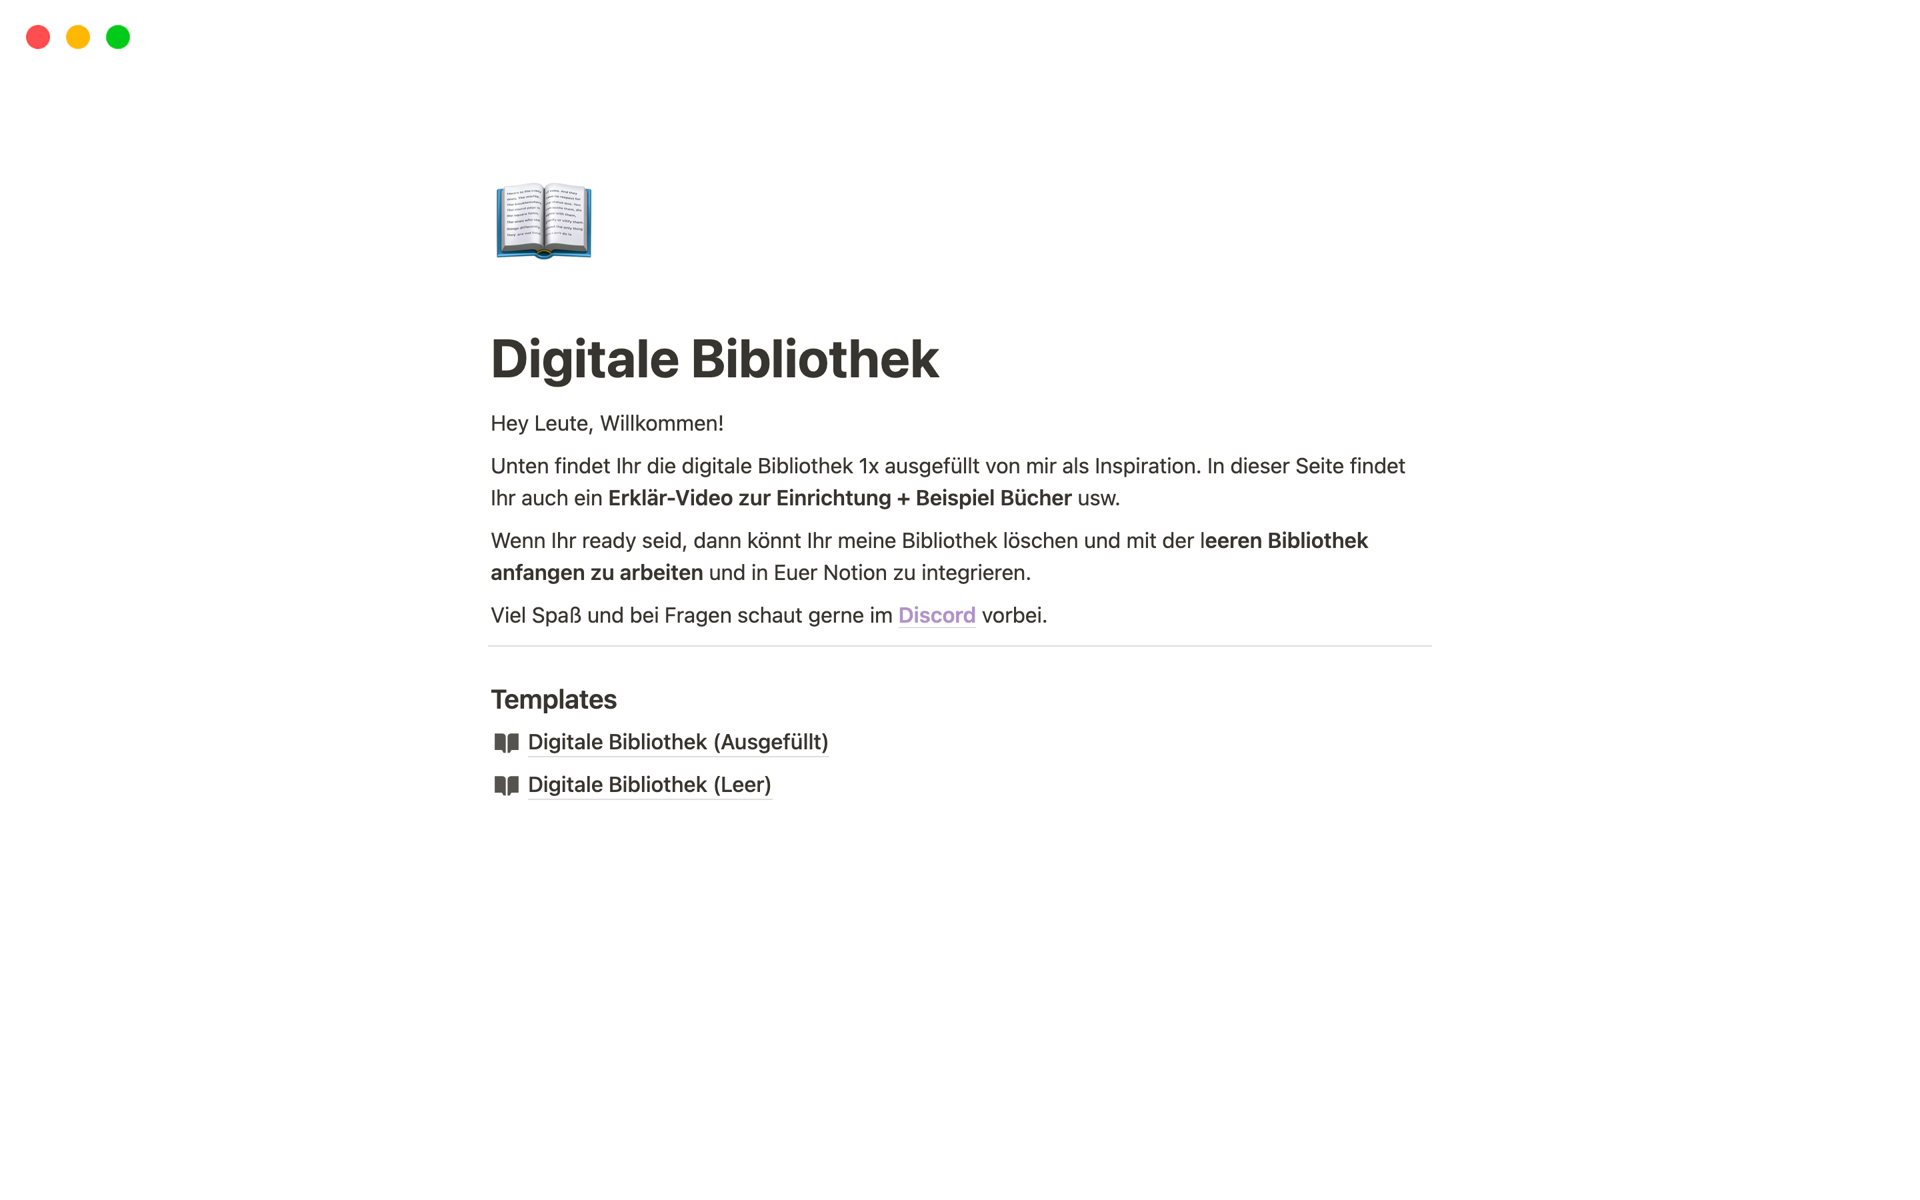 Deine Digitale Bibliothek — Vergesse nichts mehr aus deinen Lieblingsbüchern! 